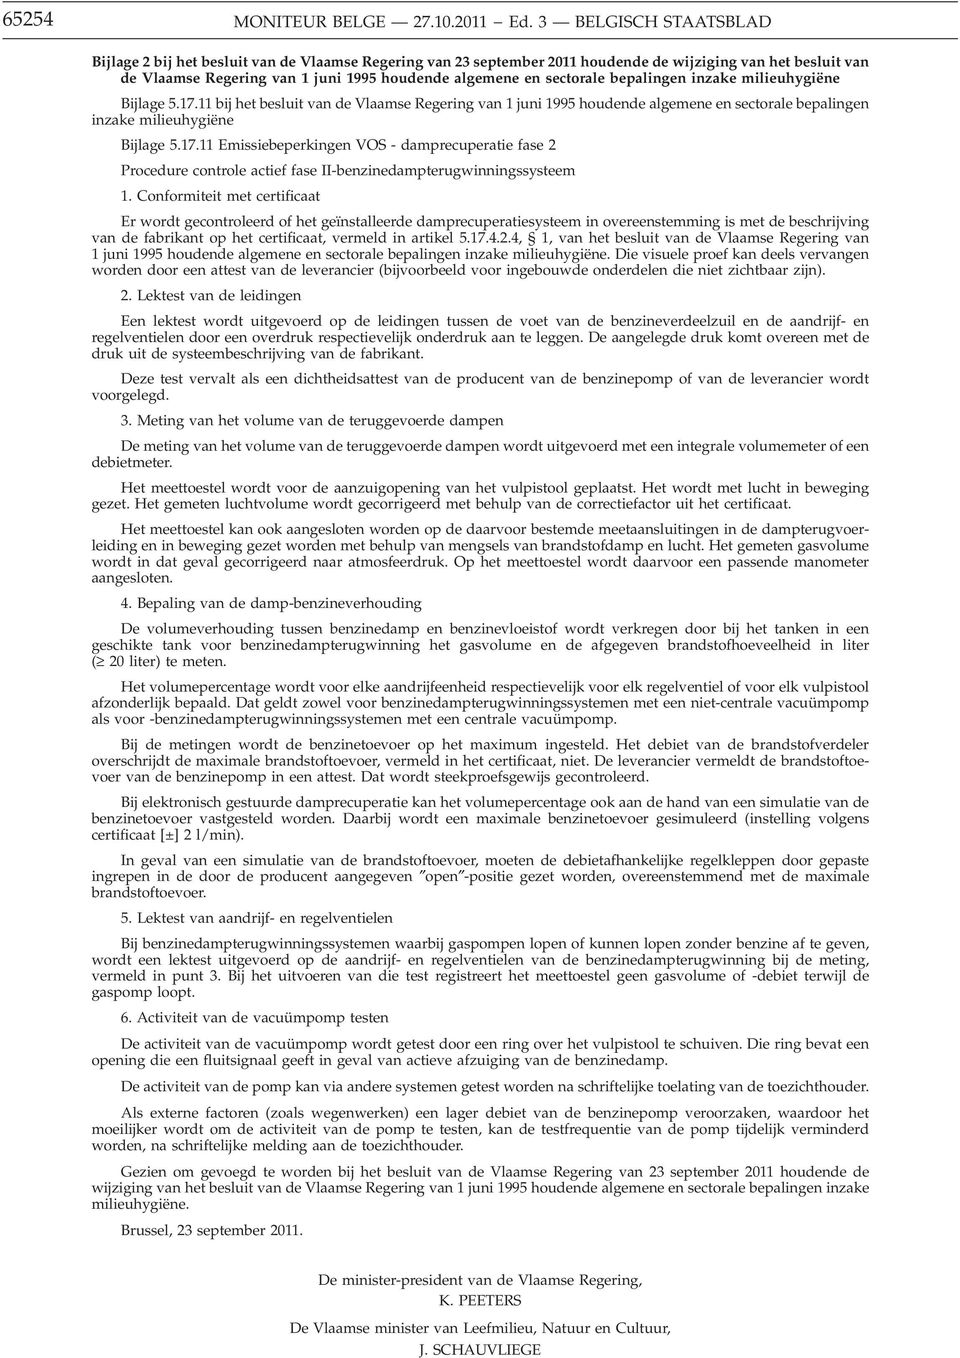 sectorale bepalingen inzake milieuhygiëne Bijlage 5.17.11 bij het besluit van de Vlaamse Regering van 1 juni 1995 houdende algemene en sectorale bepalingen inzake milieuhygiëne Bijlage 5.17.11 Emissiebeperkingen VOS - damprecuperatie fase 2 Procedure controle actief fase II-benzinedampterugwinningssysteem 1.